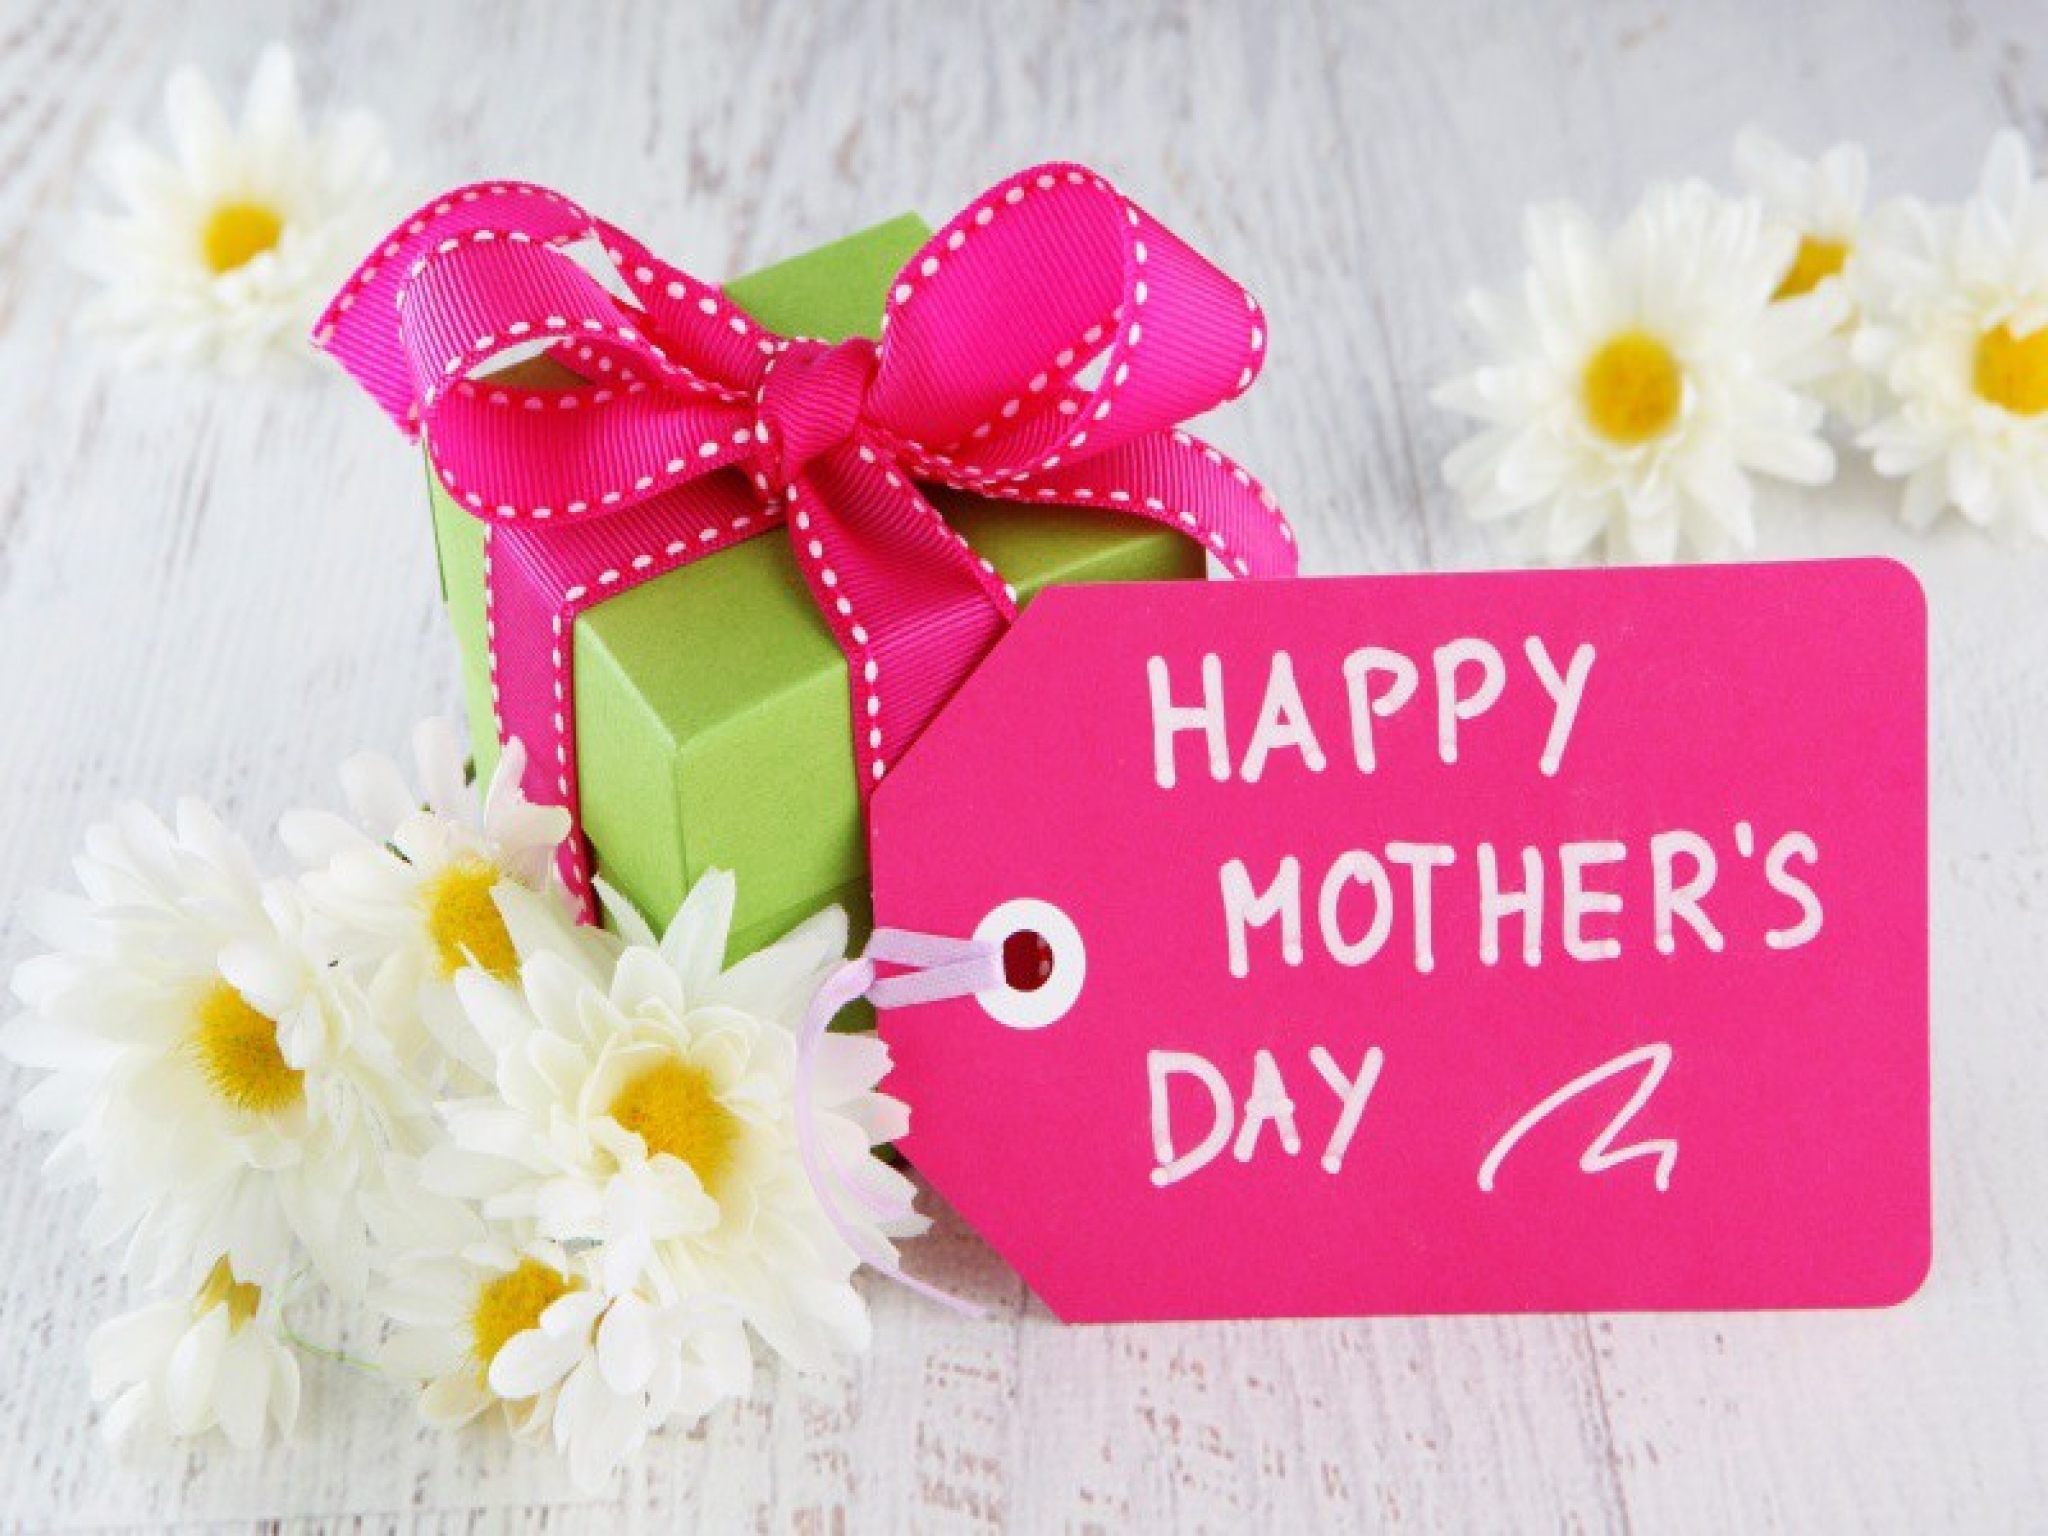 صور وكروت وبطاقات معايدة لعيد الأم - Happy Mother's Day 2020 210